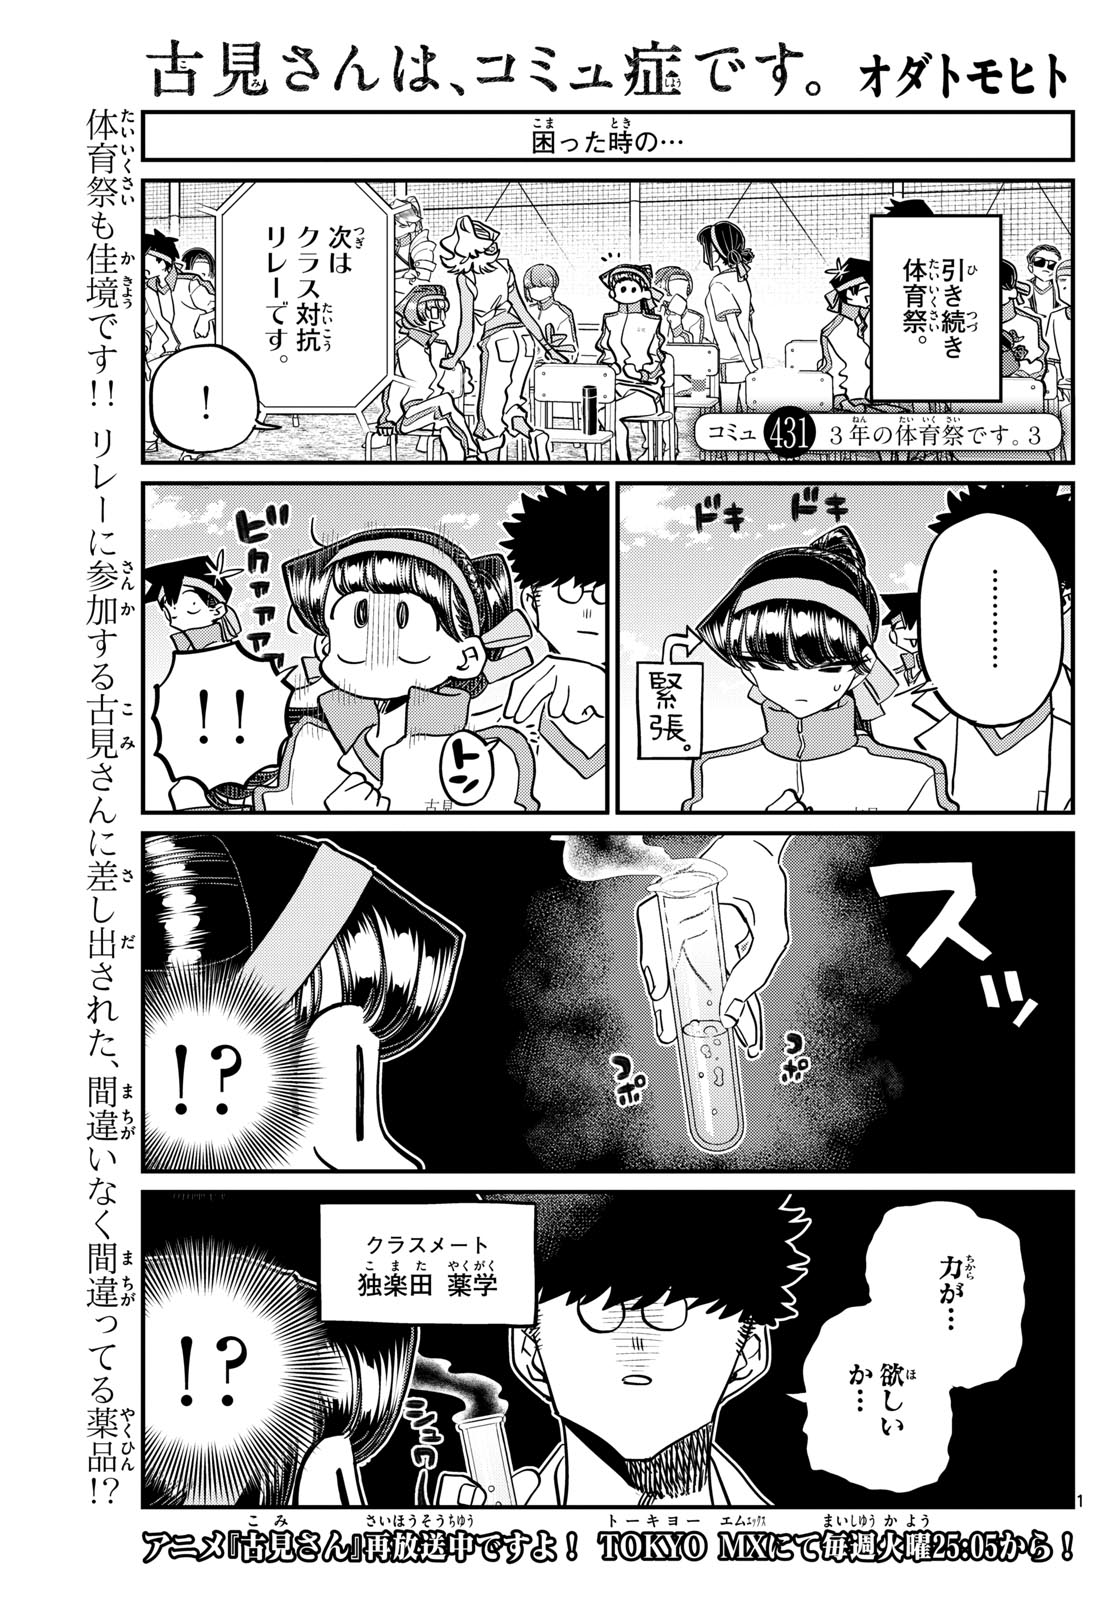 Komi-san wa Komyushou Desu - Chapter 431 - Page 1